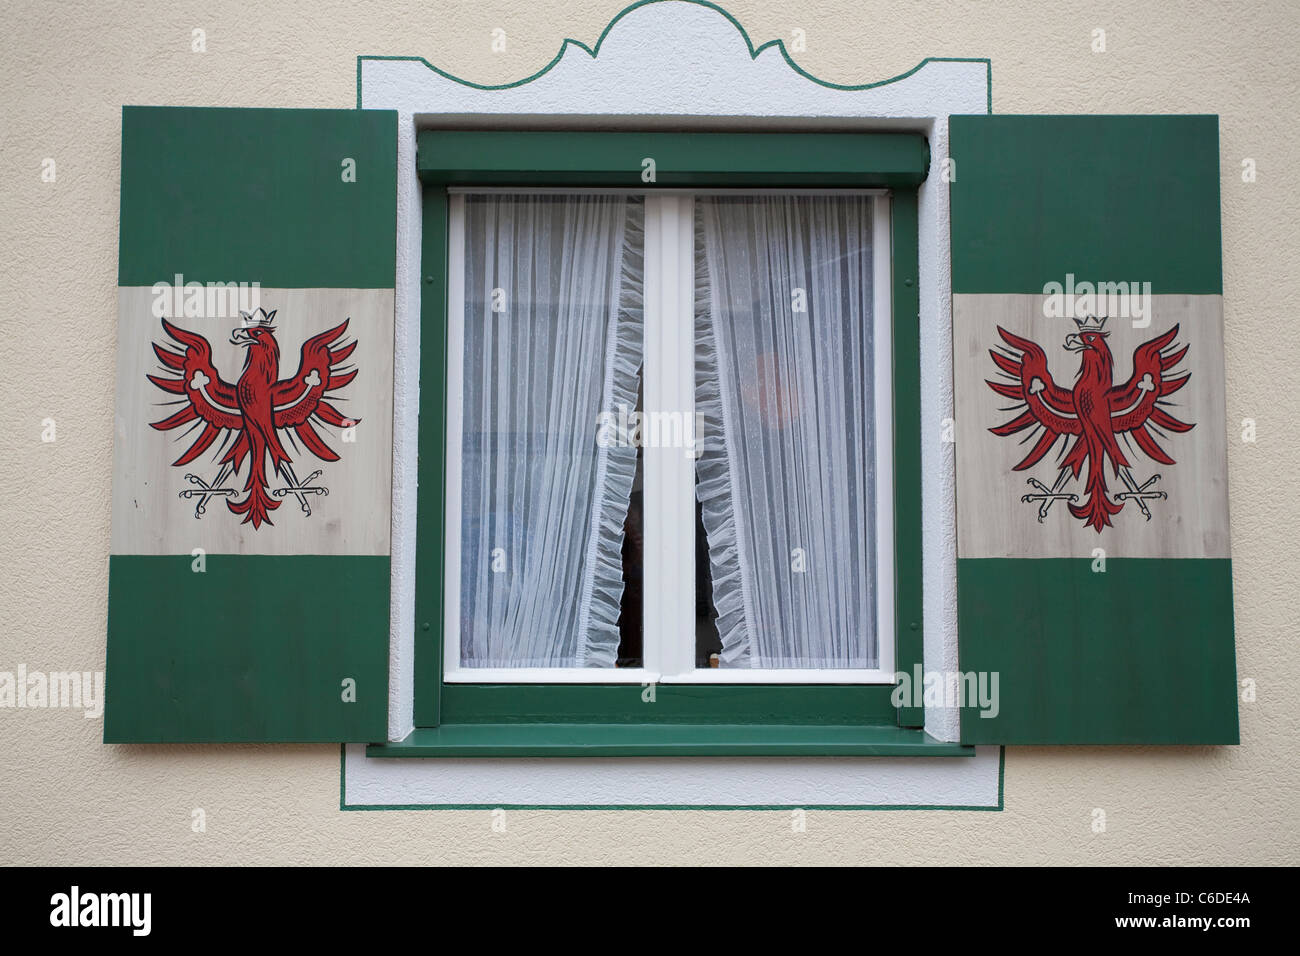 Fensterlaeden Mit Aufgemaltem Tiroler Landeswappen, Vorderlanersbach, Verschlusszeit Windows mit Tirol Emblem, roter Adler Stockfoto